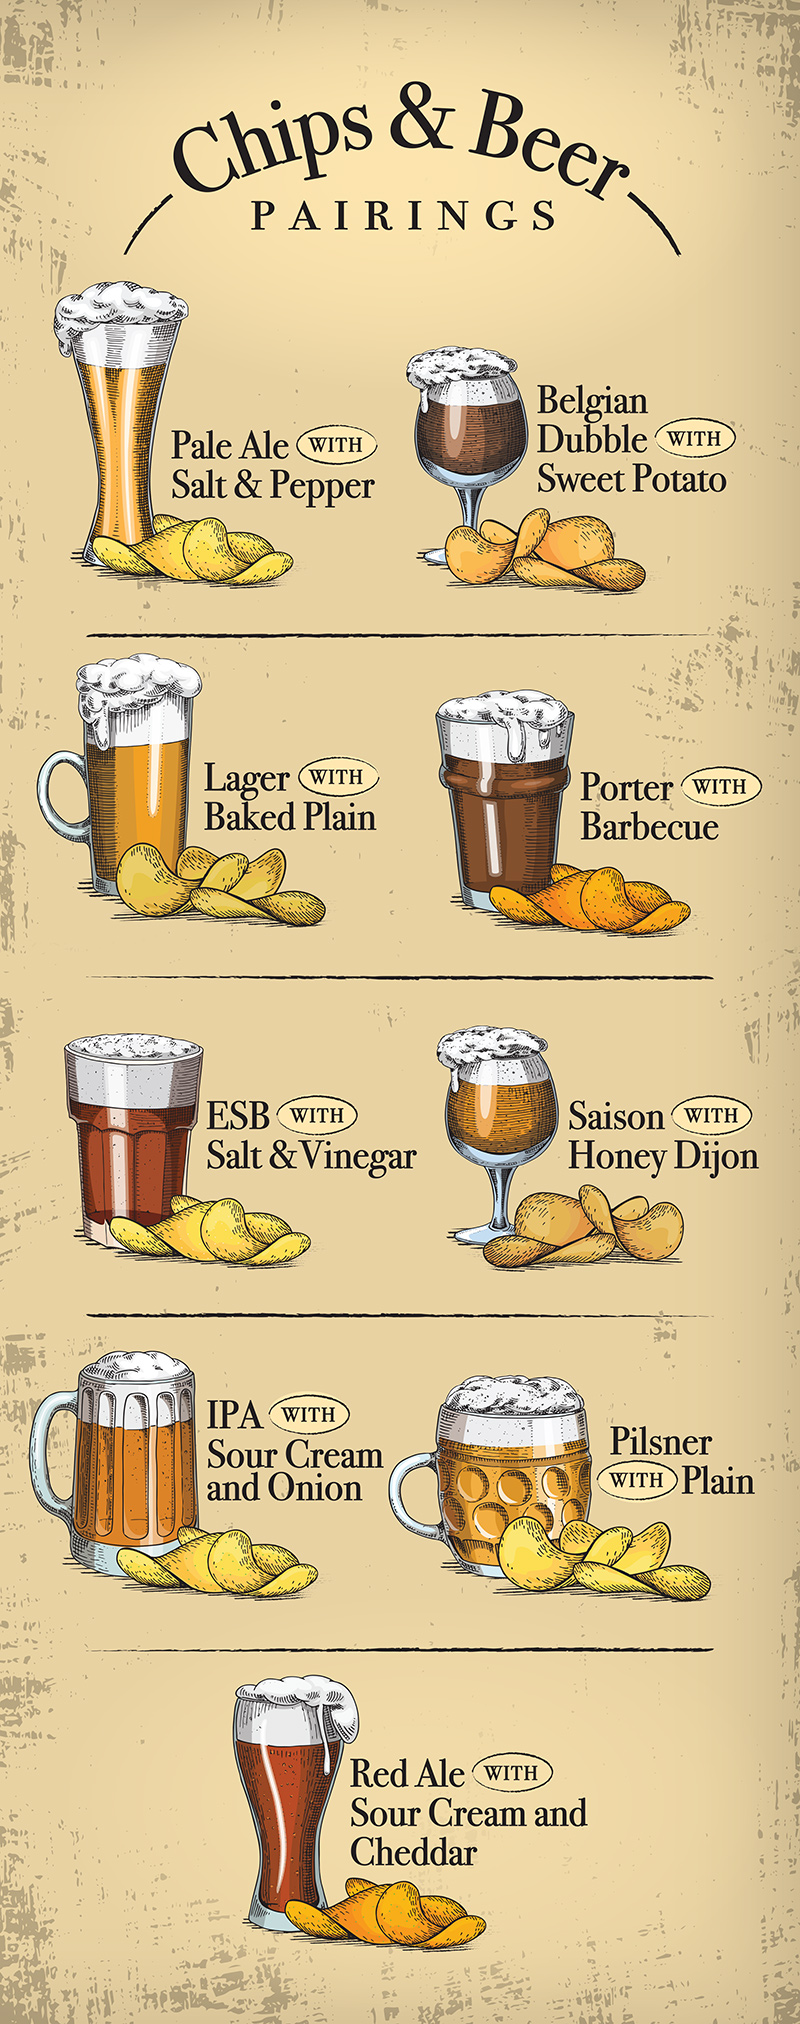 BeerAndChips-Infographic-EN